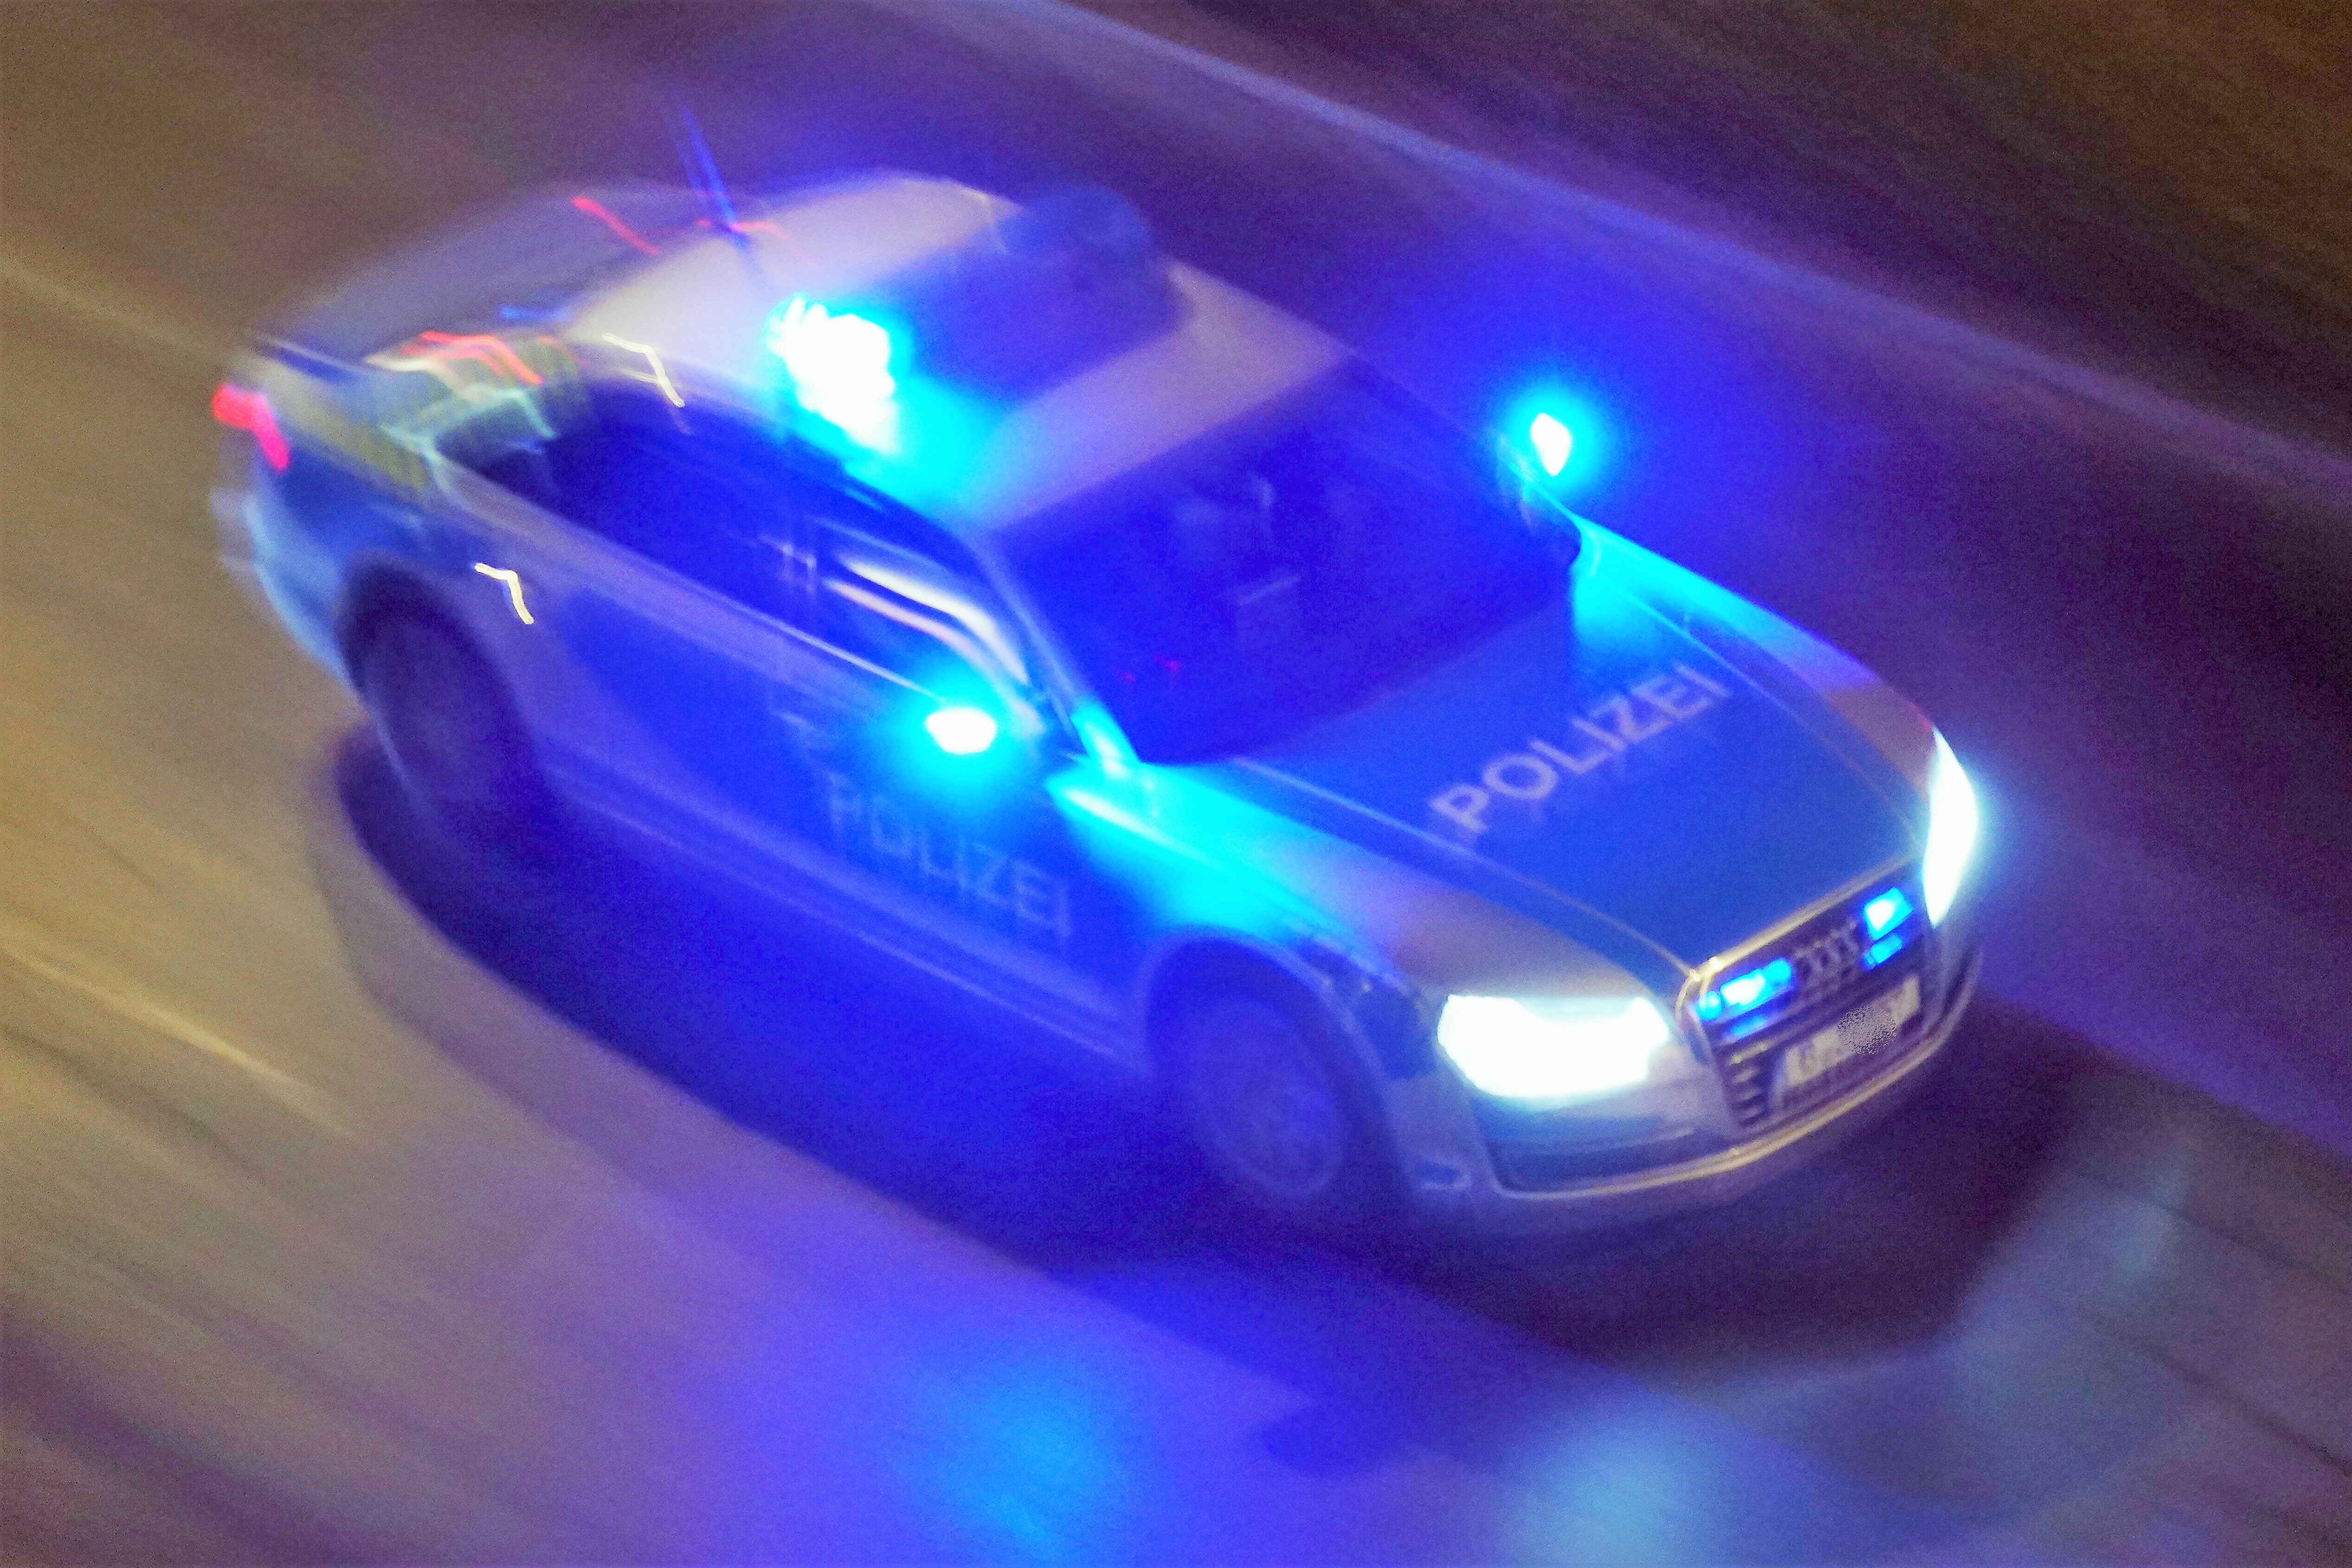 Deutschland - Irre Verfolgungsjagd ! – AMG-Mercedes hängt mehr als 40 Streifenwagen ab und flieht!